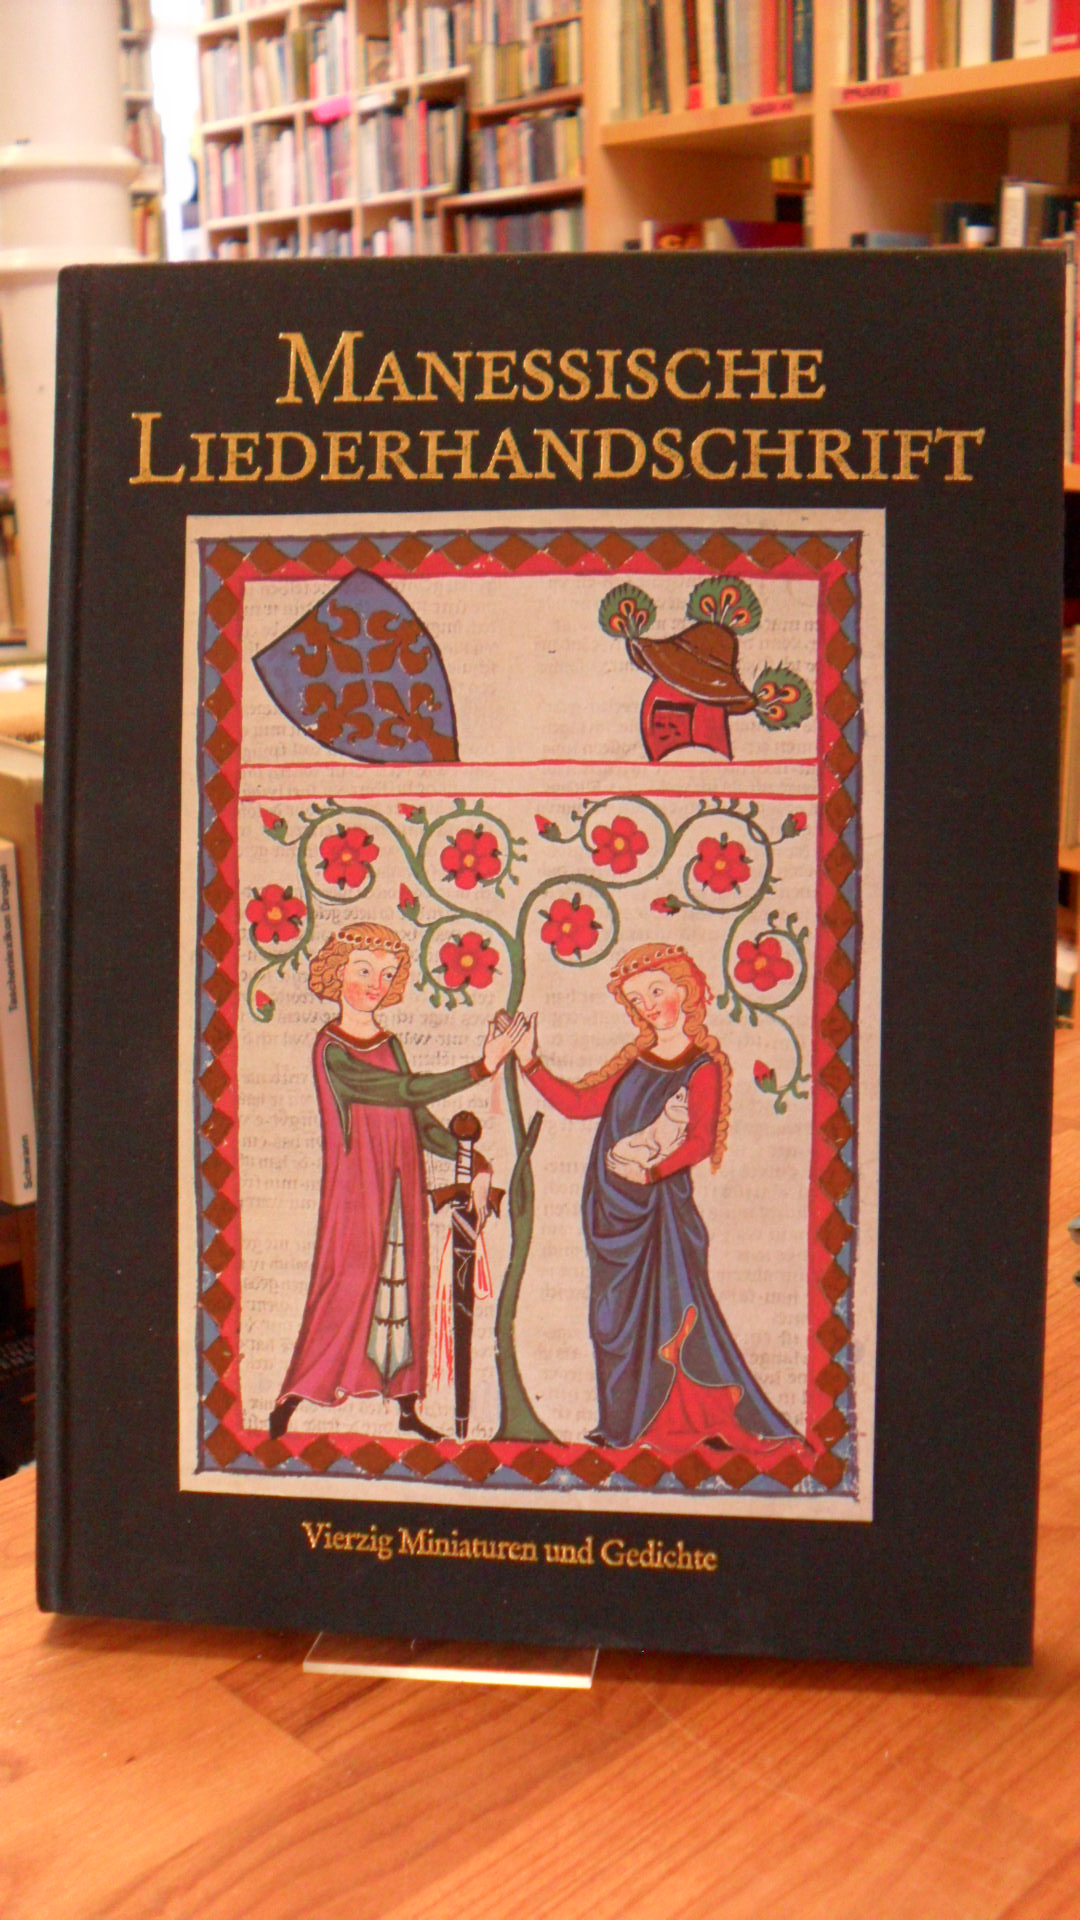 Gaugler, Manessische Liederhandschrift – Vierzig Miniaturen und Gedichte,